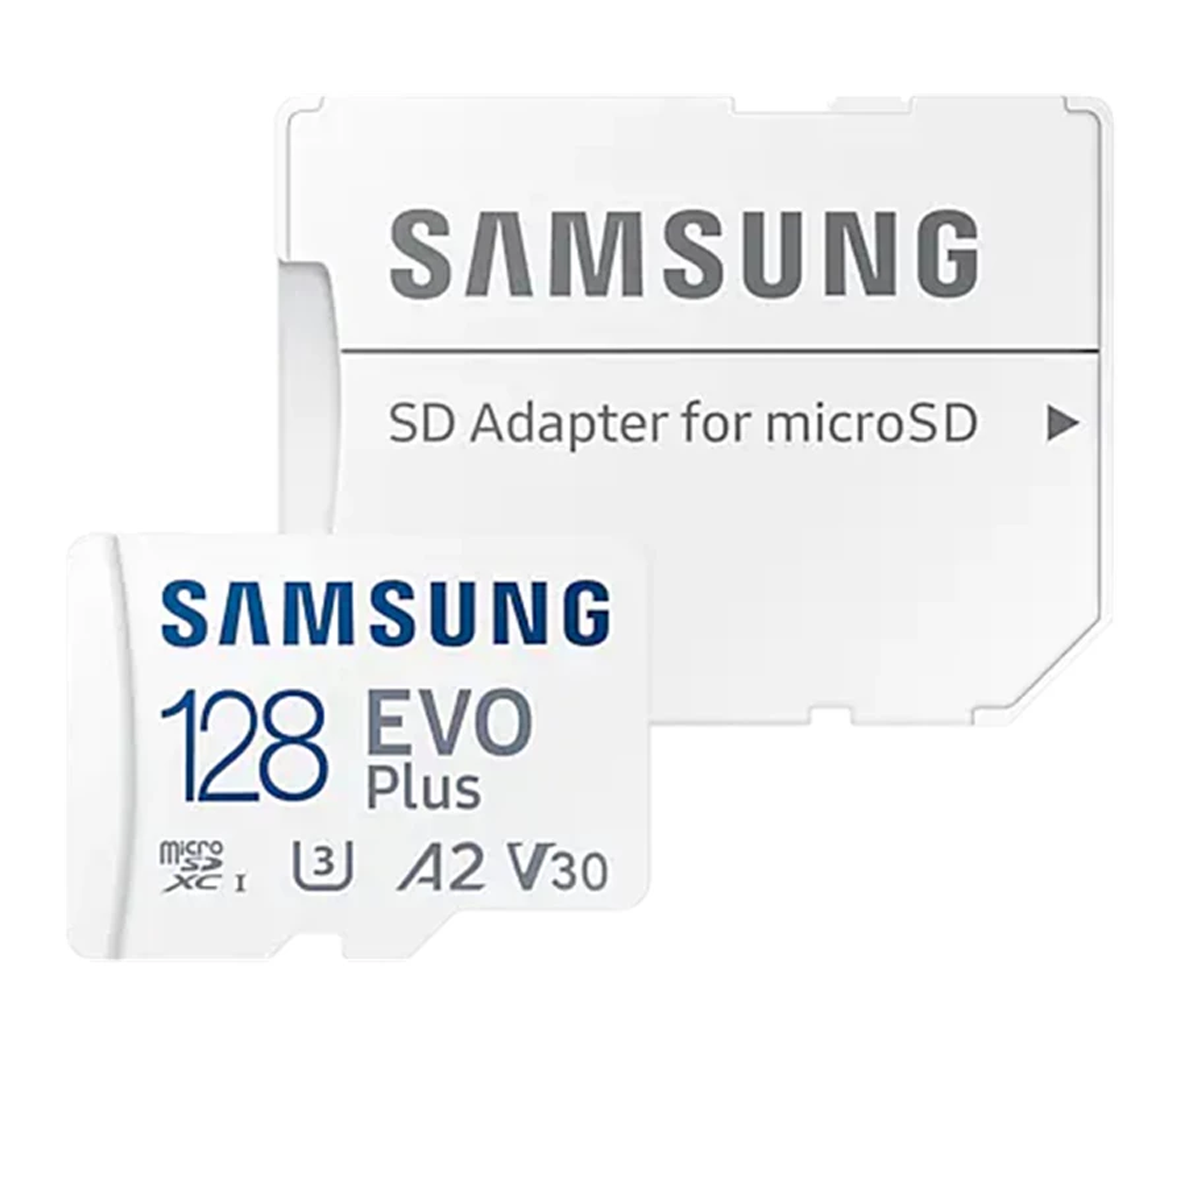 کارت حافظه microSDXC سامسونگ مدل Evo Plus A2 V30 کلاس 10 ظرفیت 128 گیگابایت به همراه آداپتور SD-سفید